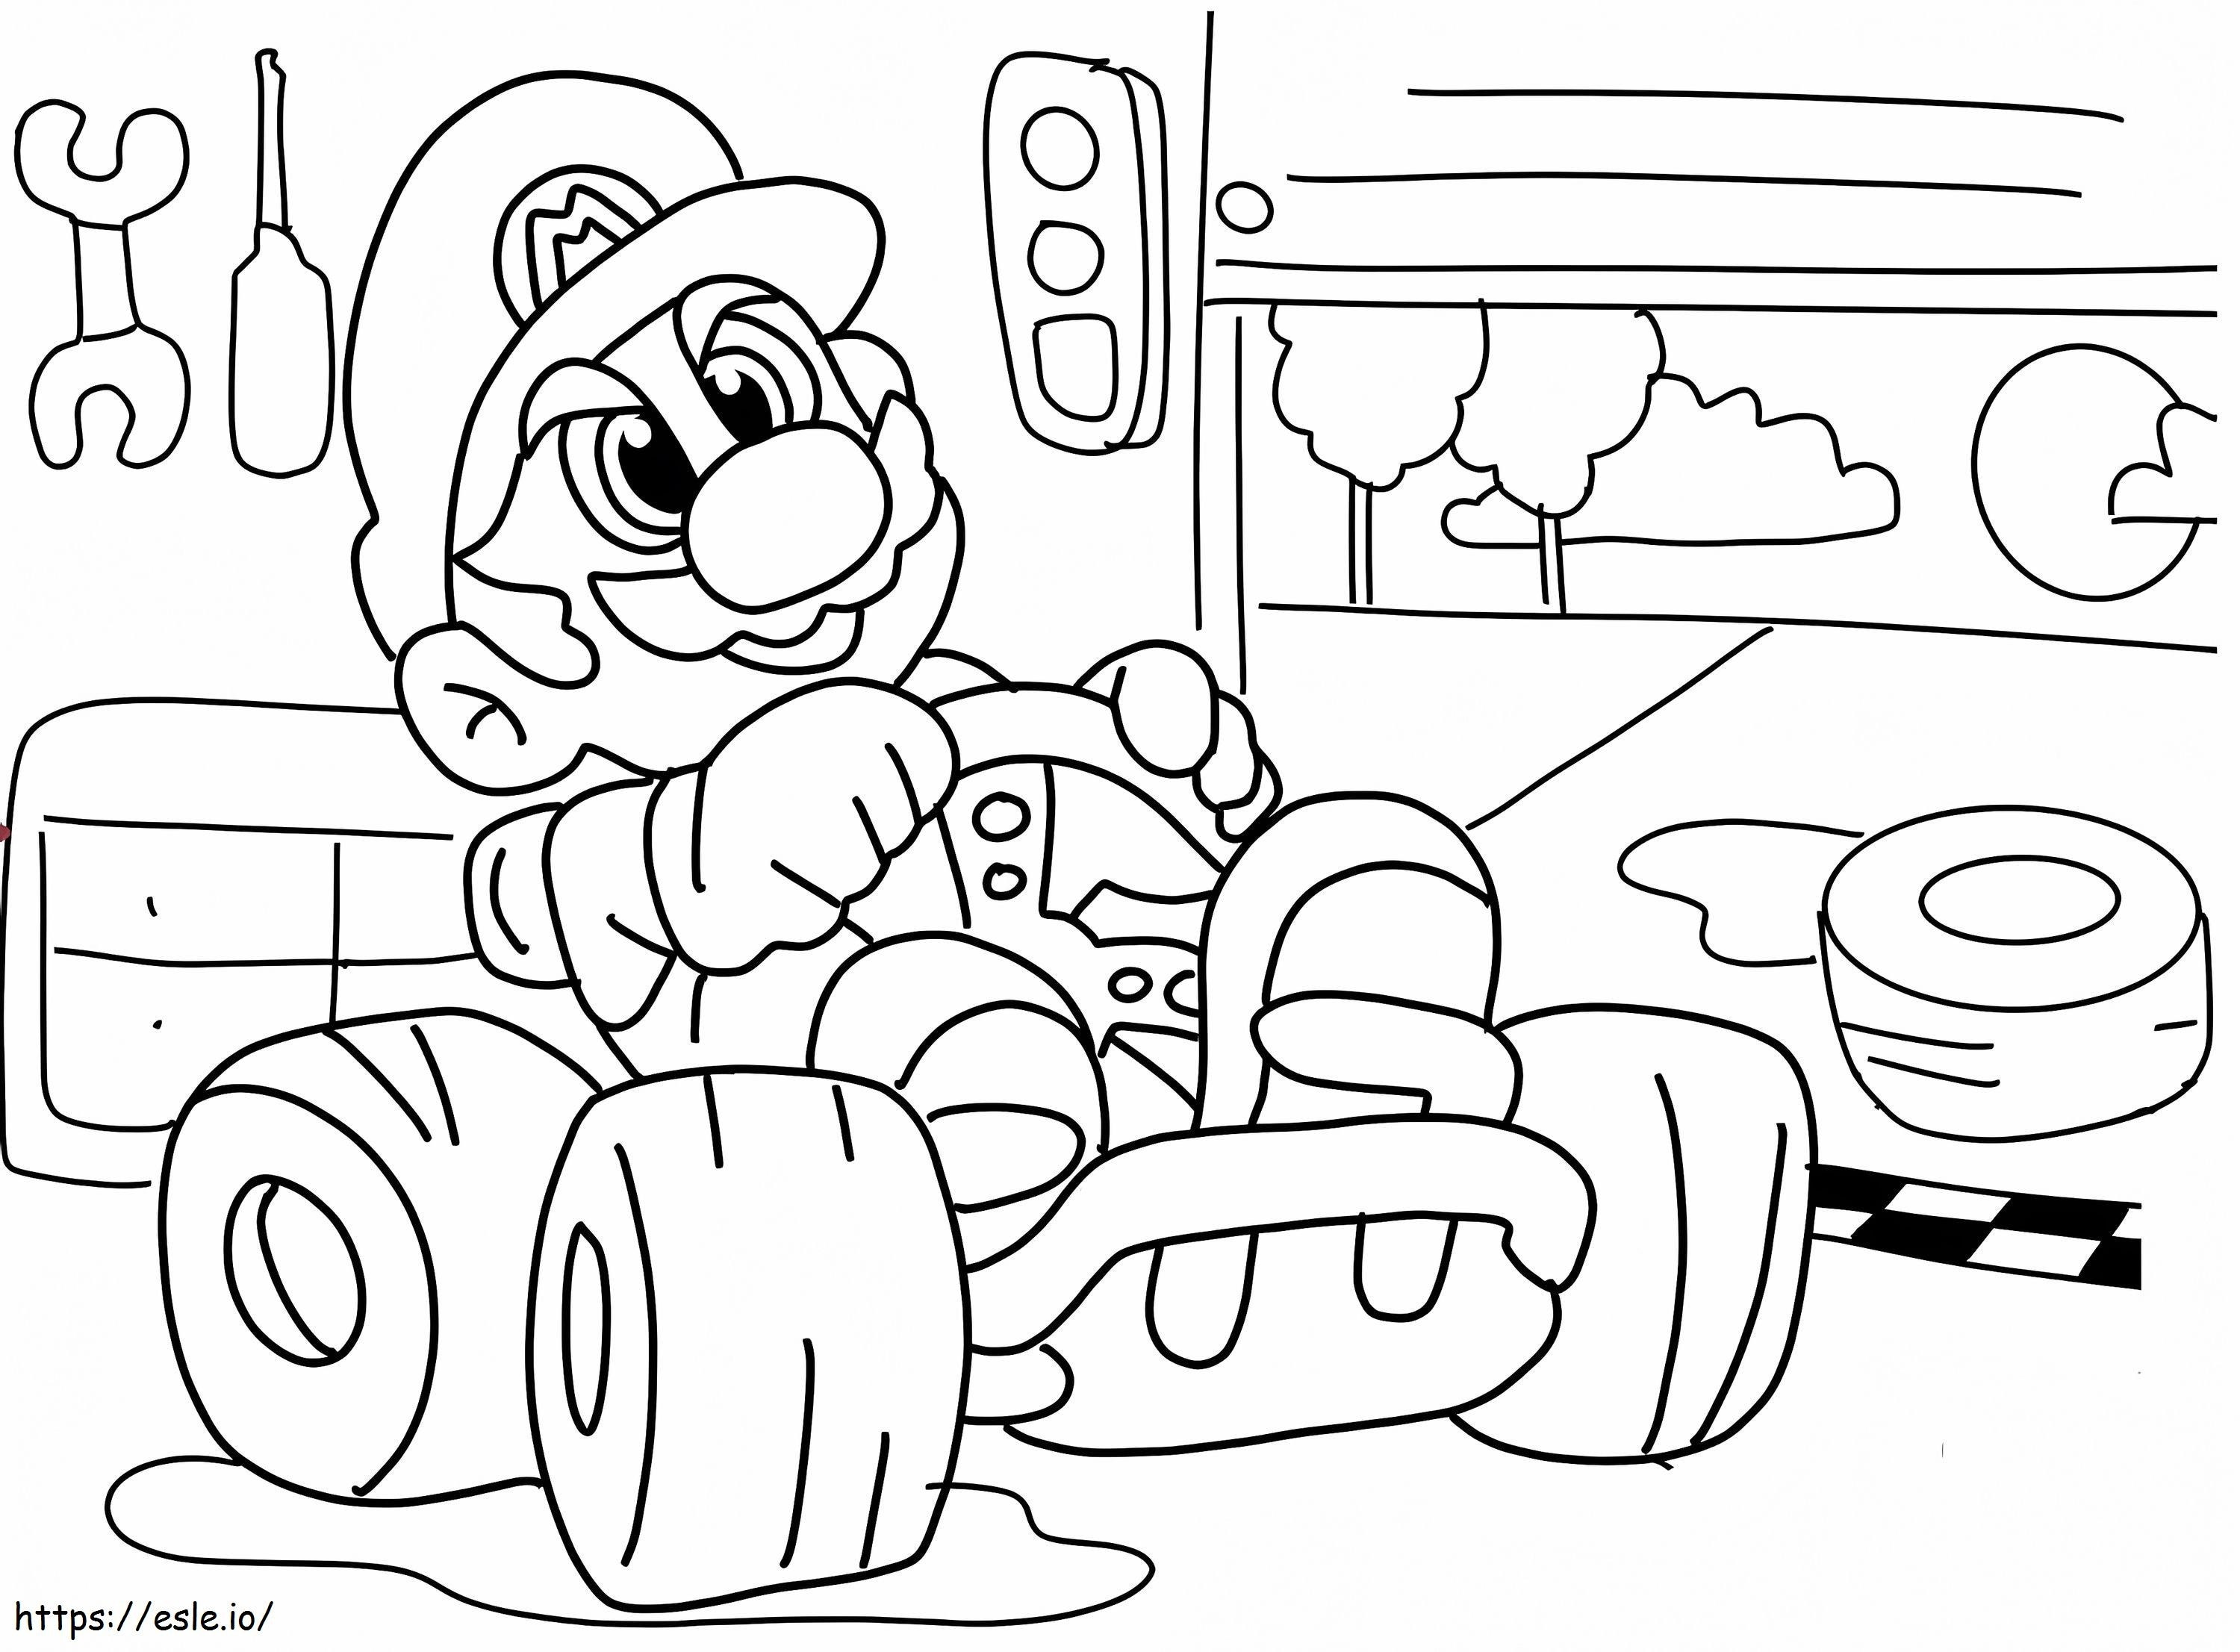 Super Mario Racing coloring page